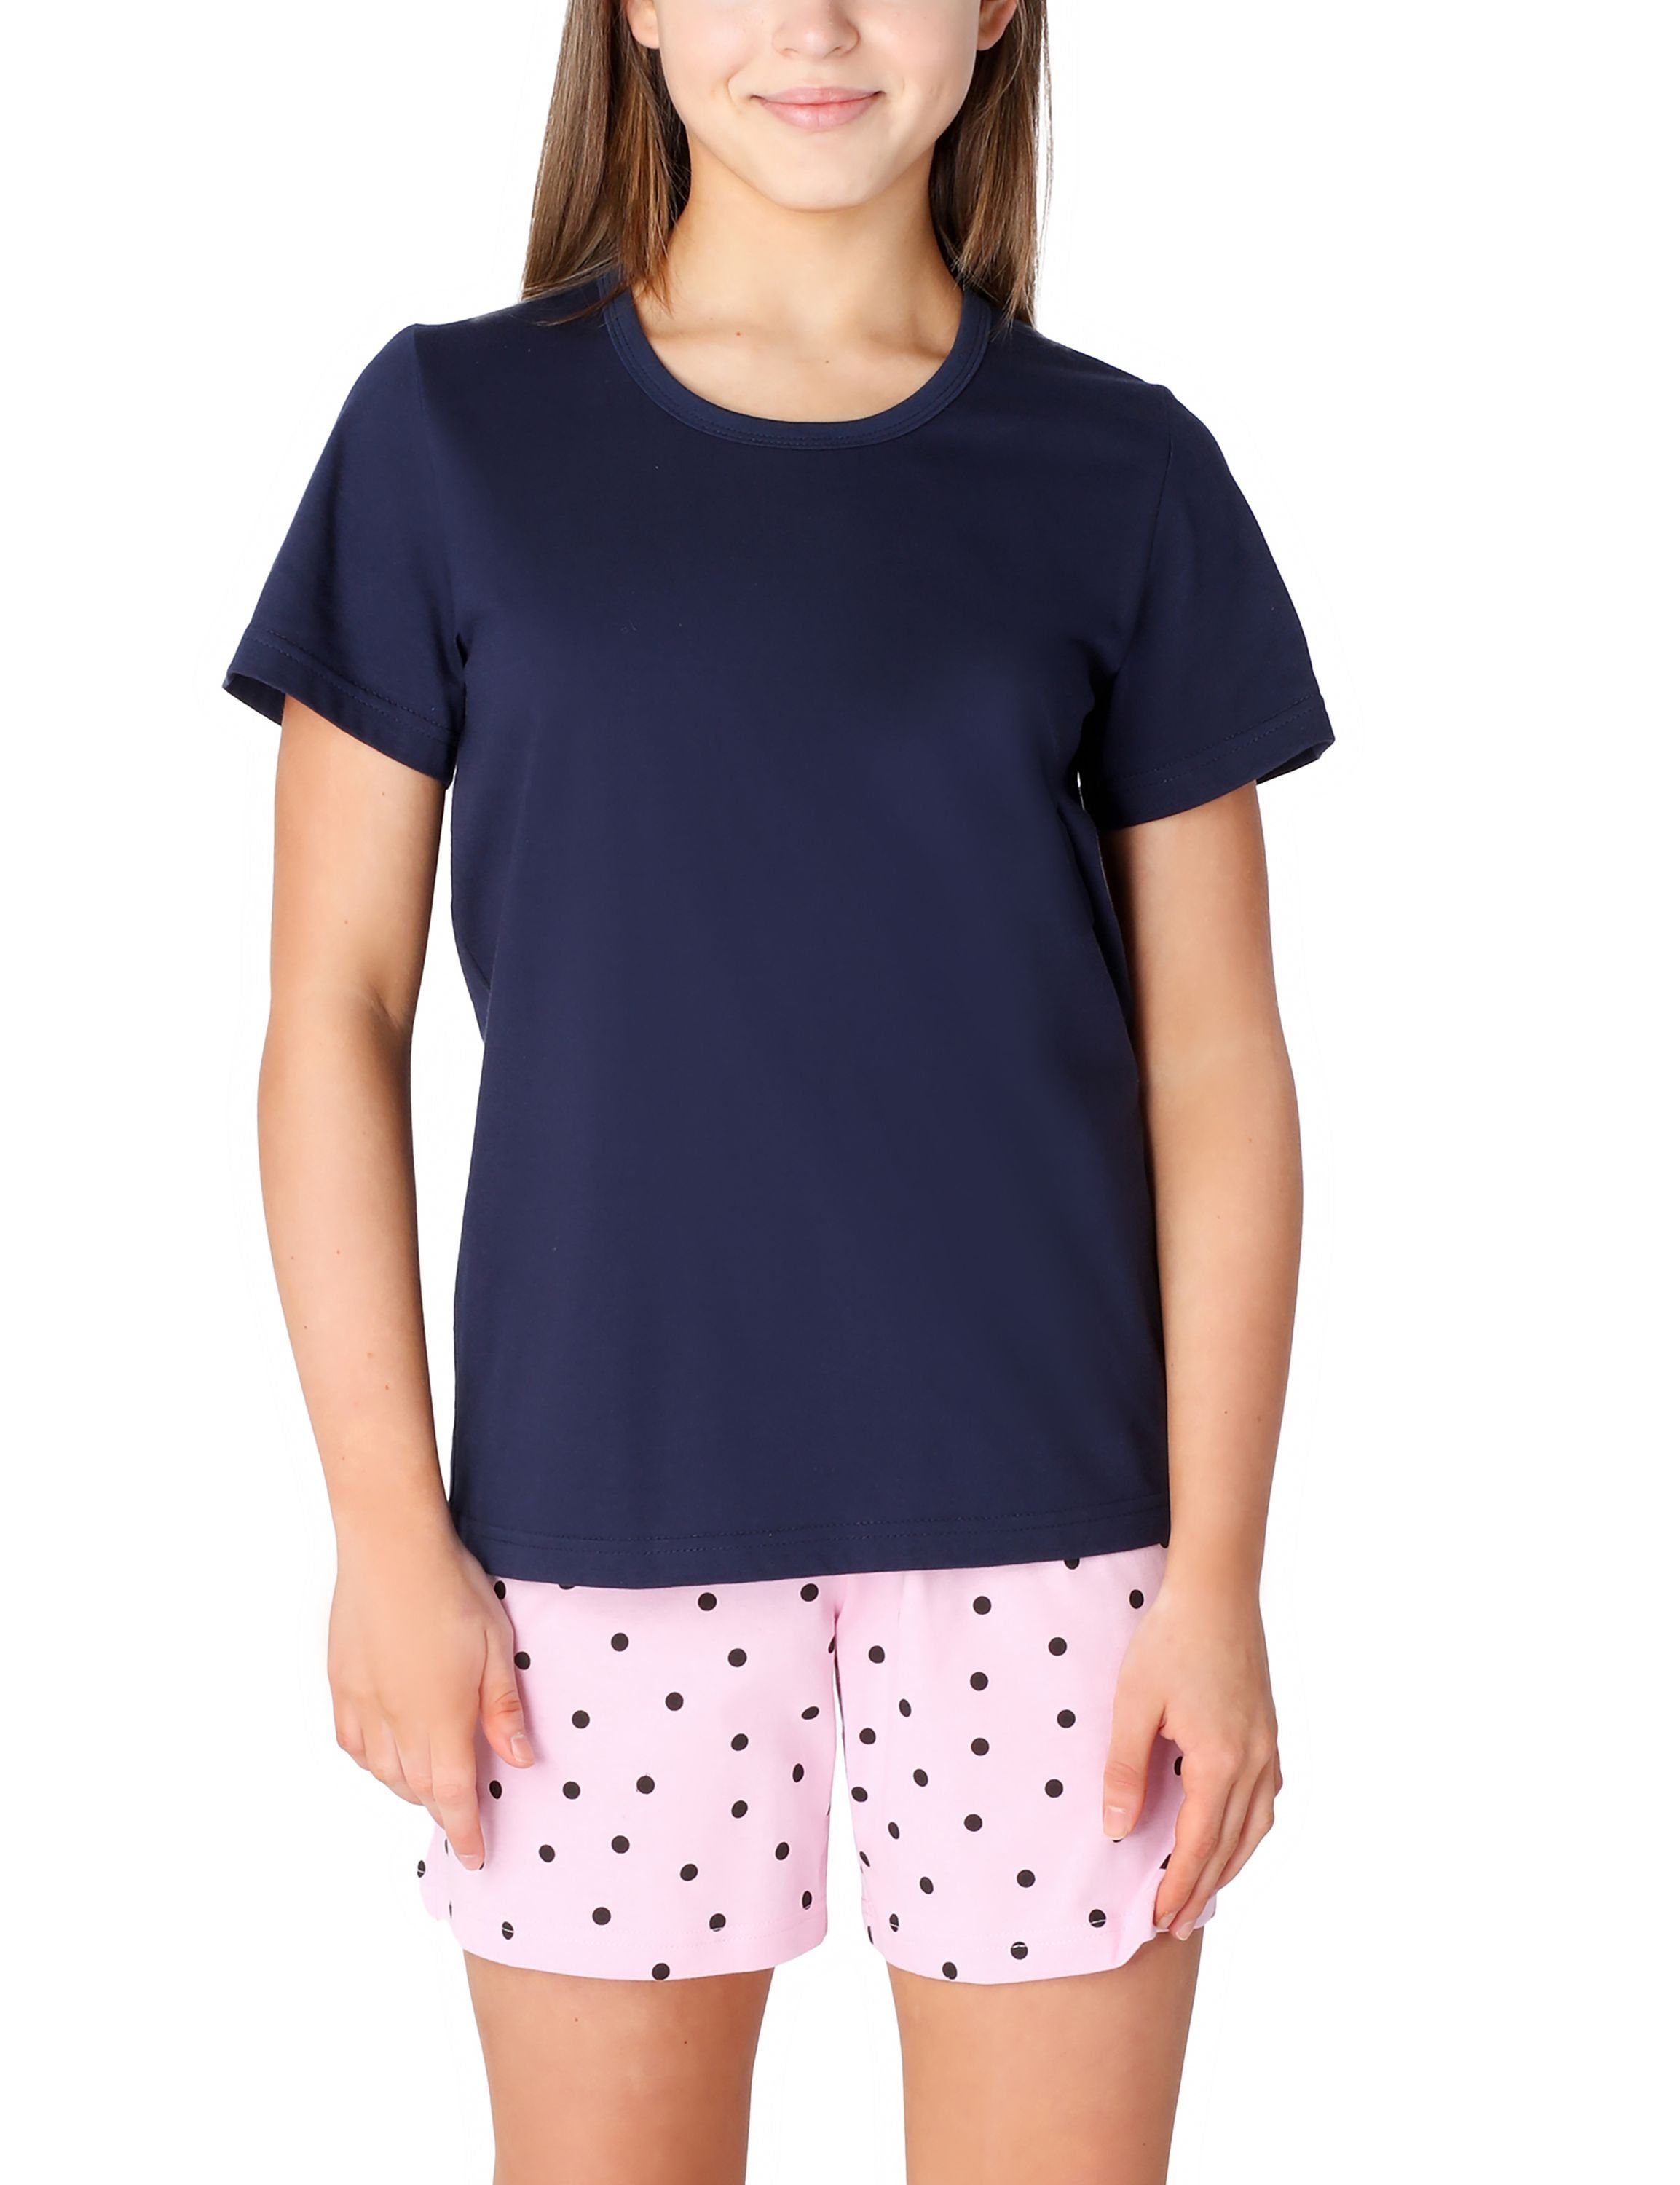 Merry Style Schlafanzug Mädchen Schlafanzüge Kurz aus Baumwolle Pyjama Set MS10-265 Marine/Rosa/Punkte